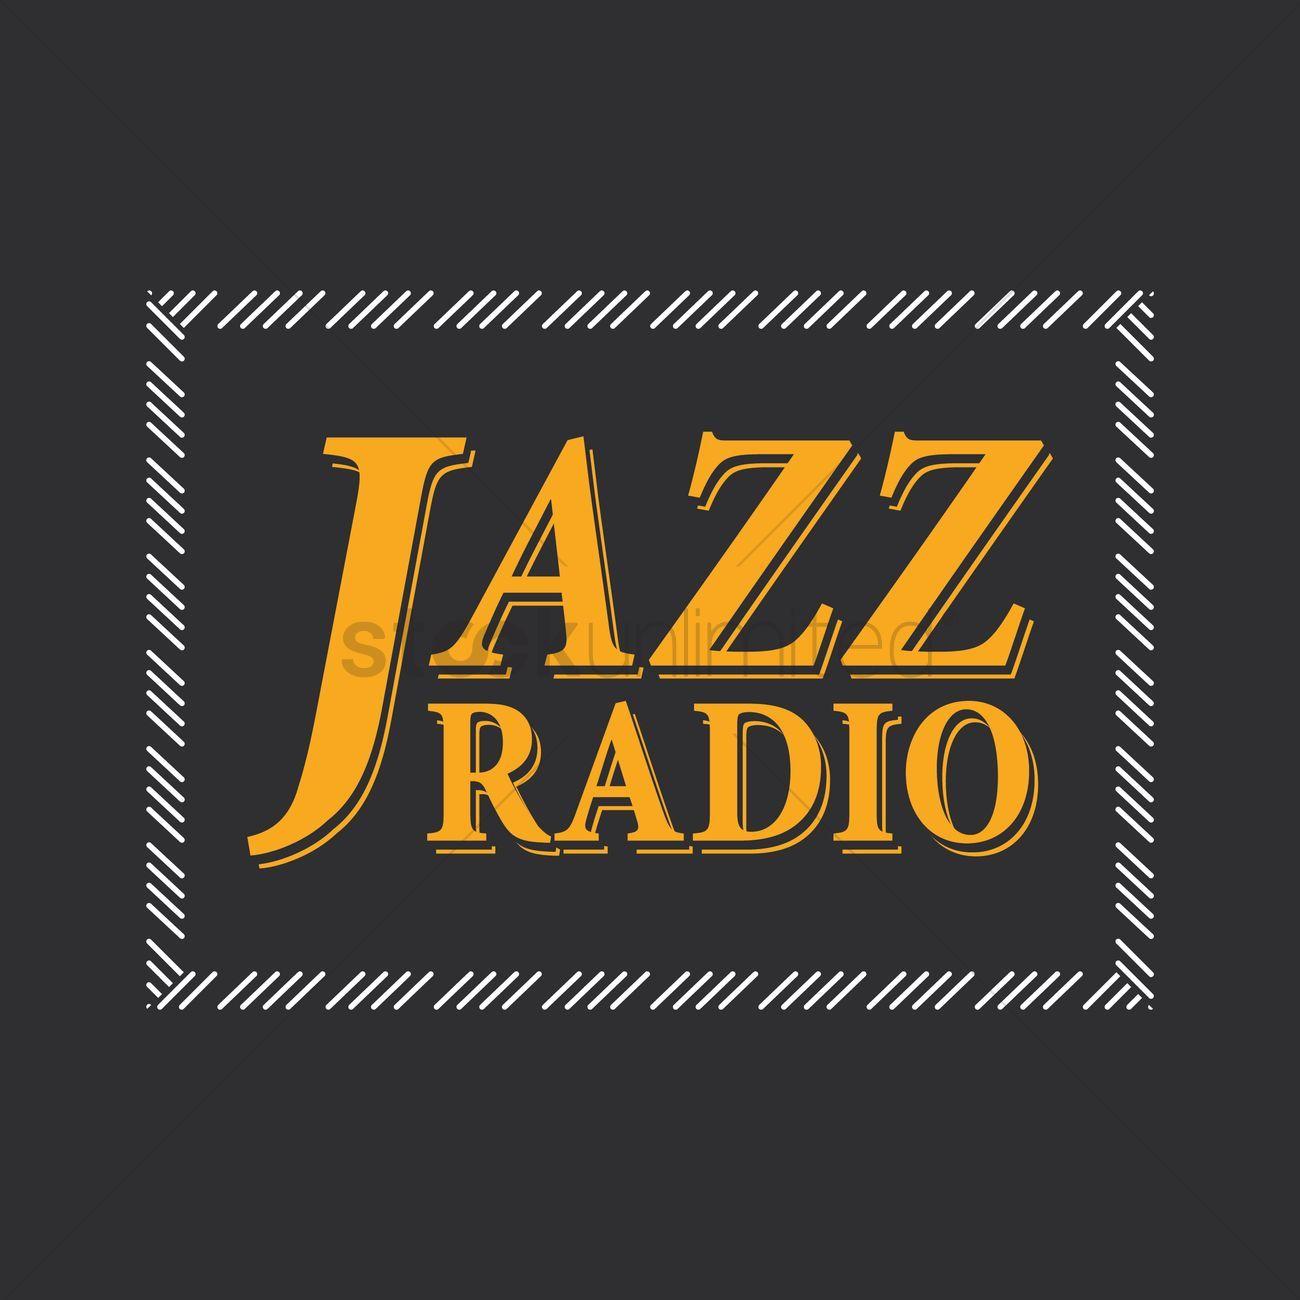 Jazz Radio Logo - Jazz radio logo Vector Image